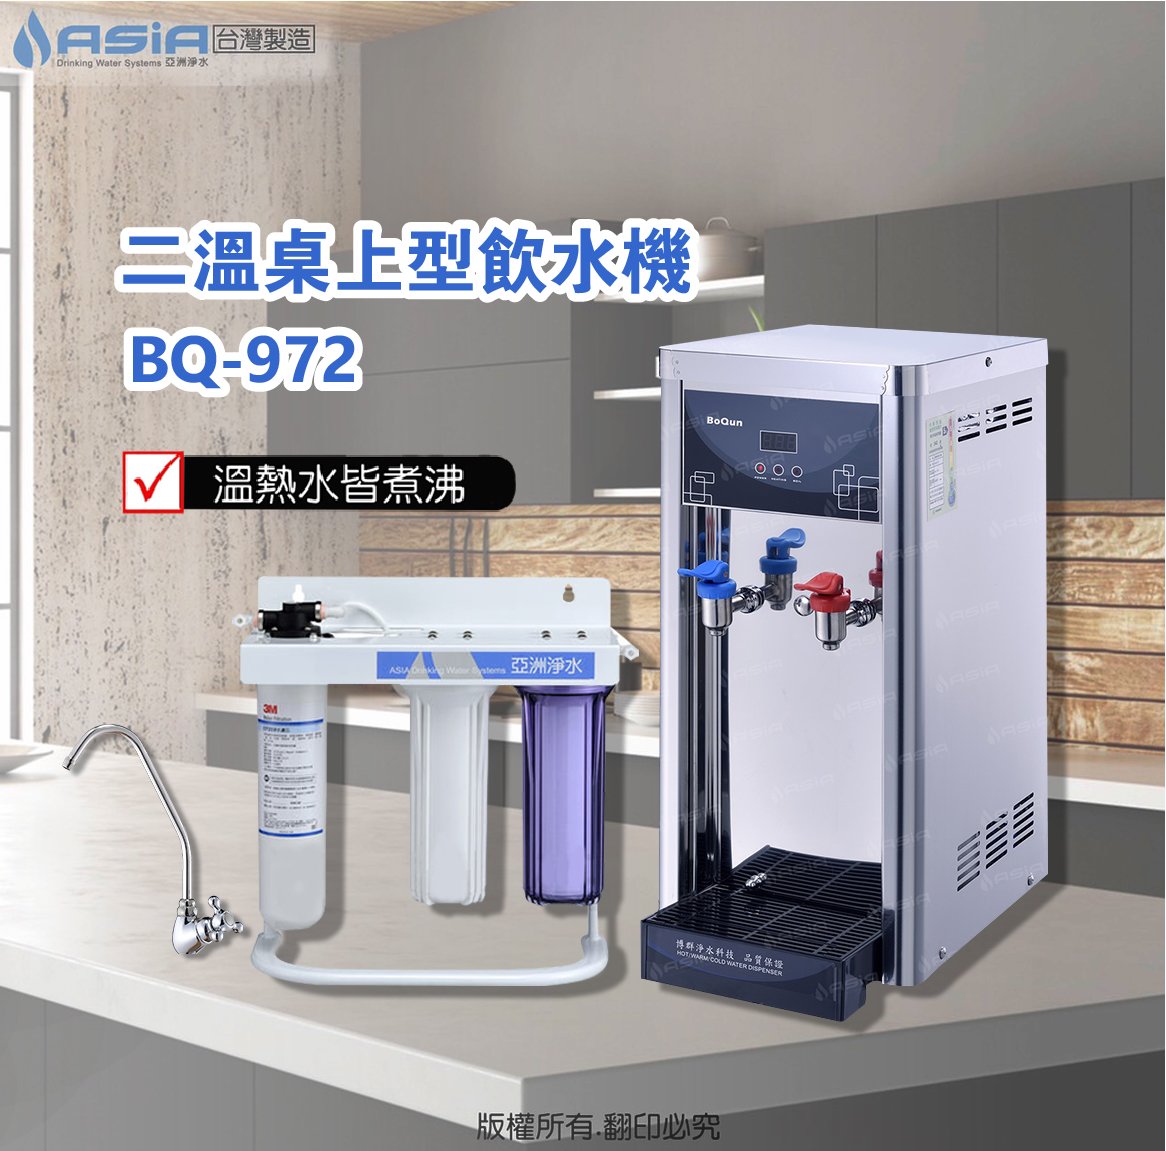 亞洲淨水雙溫飲水機加購三道式淨水器~採用美國型